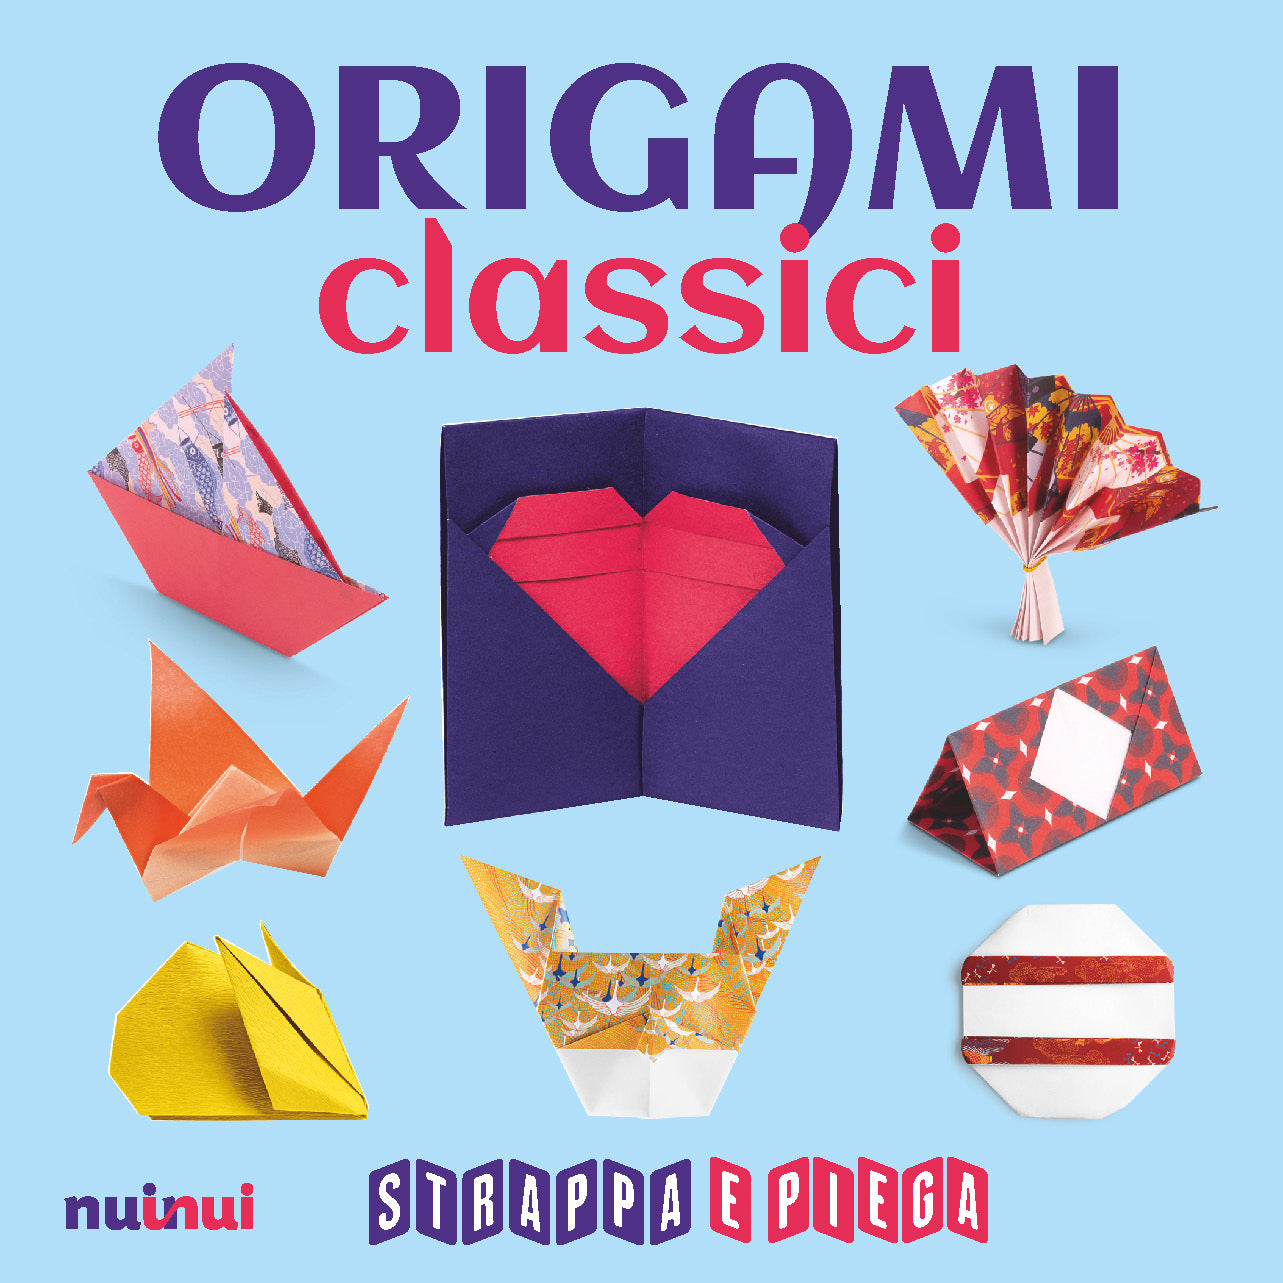 Origami classici - Strappa e piega